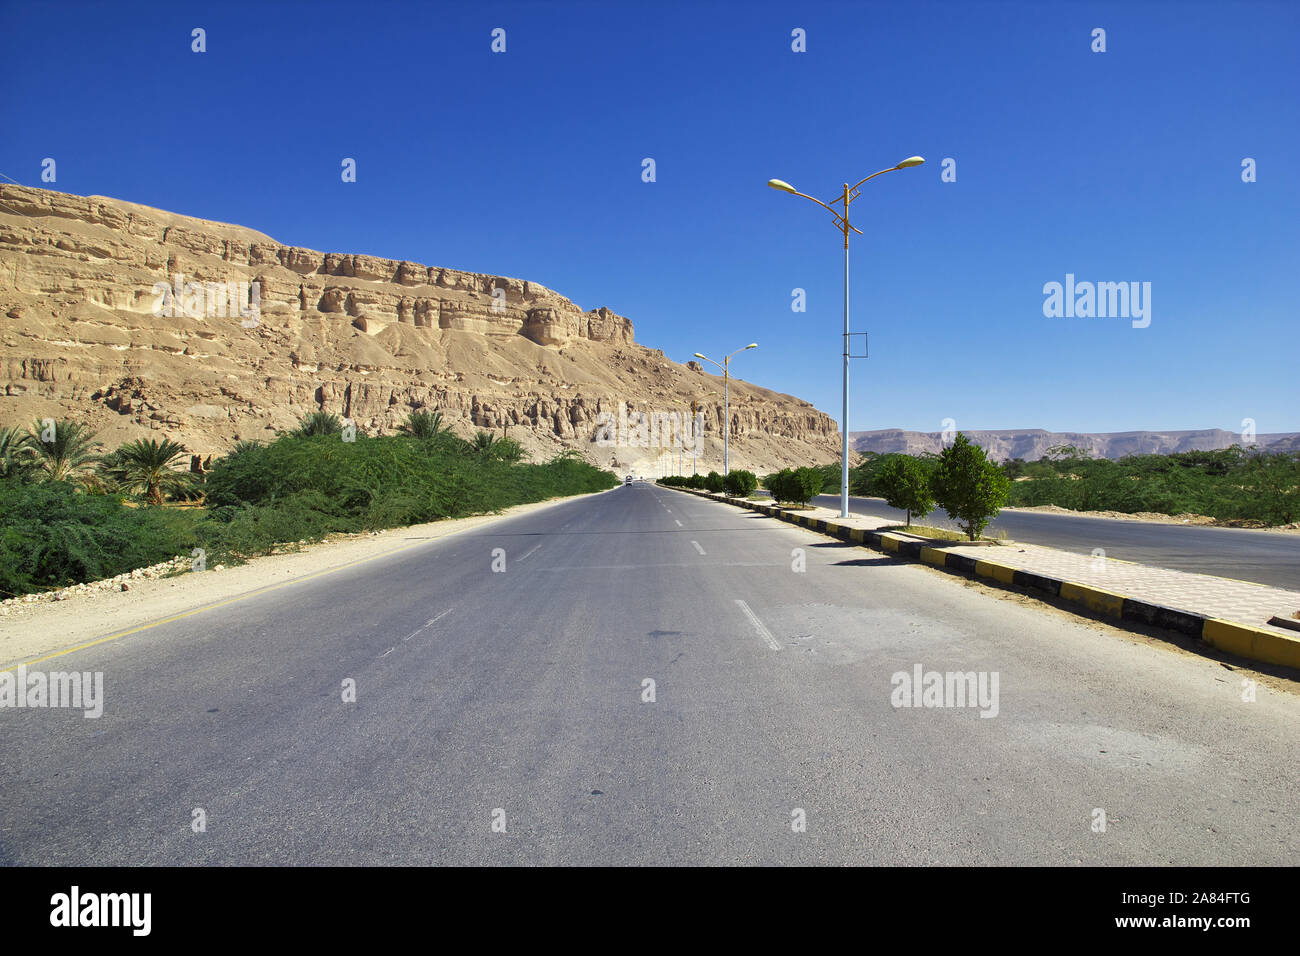 The road in mountains in Wadi Hadhramaut, Yemen Stock Photo